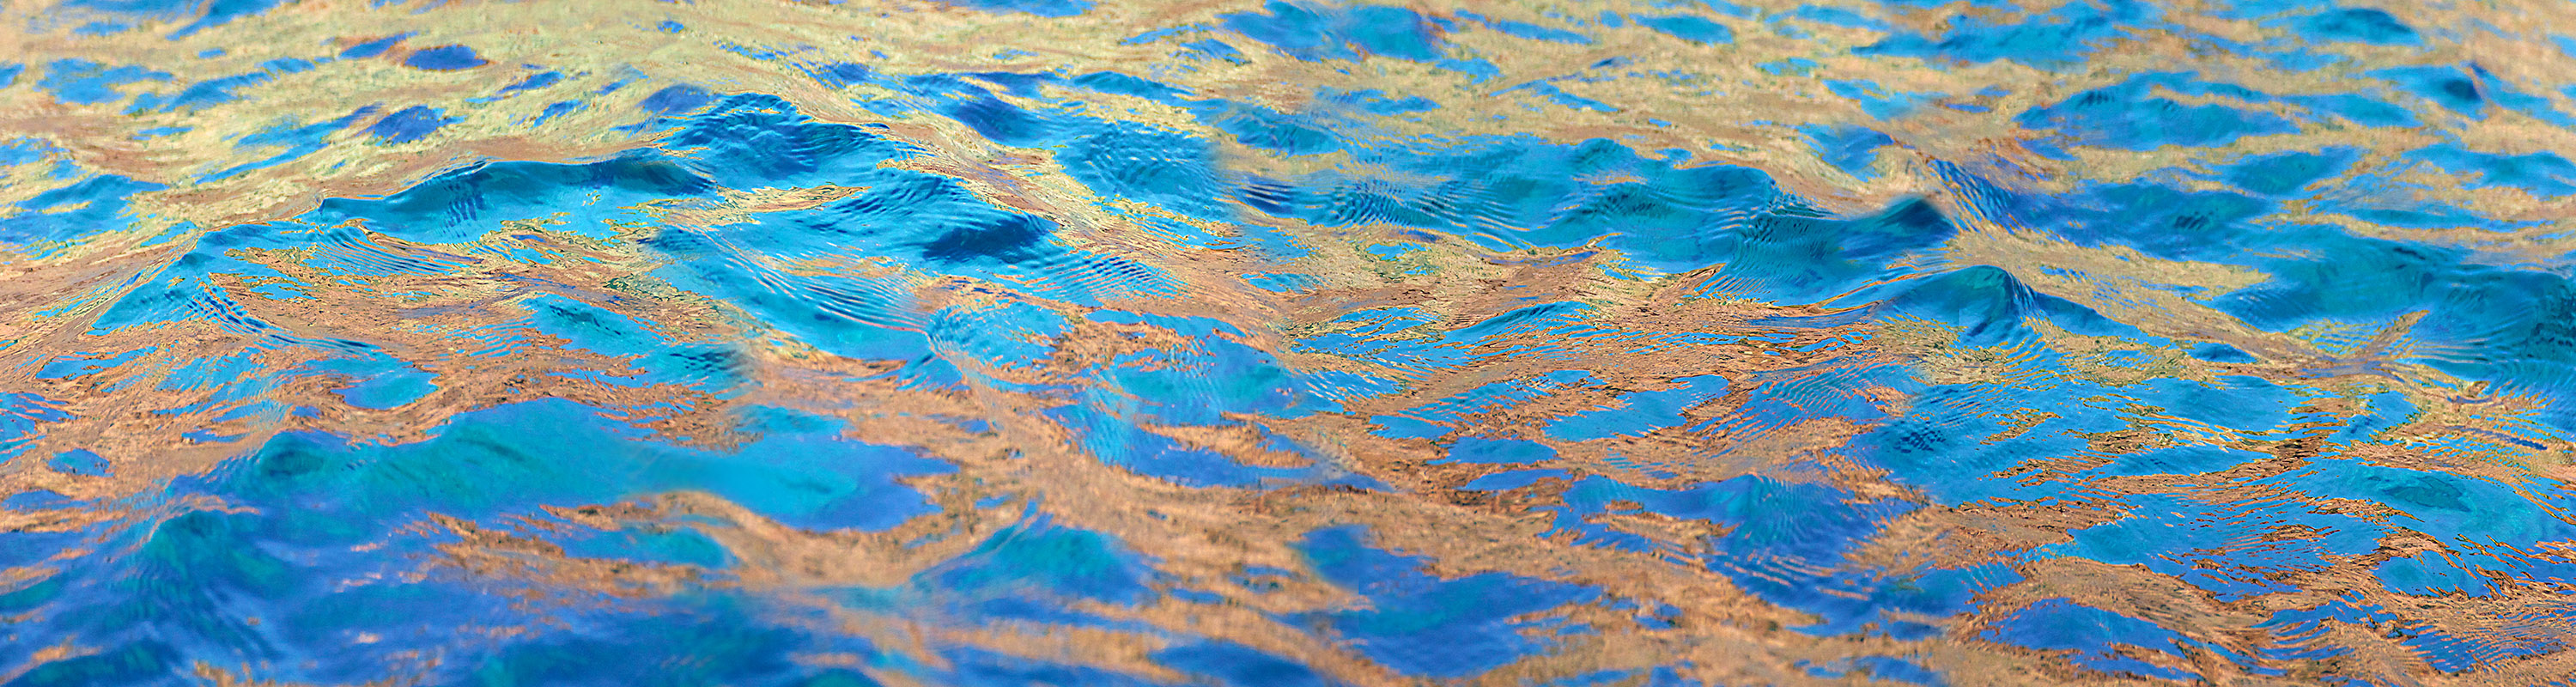 Magic Water - Türkisblau mit Orange-Spiegel 2